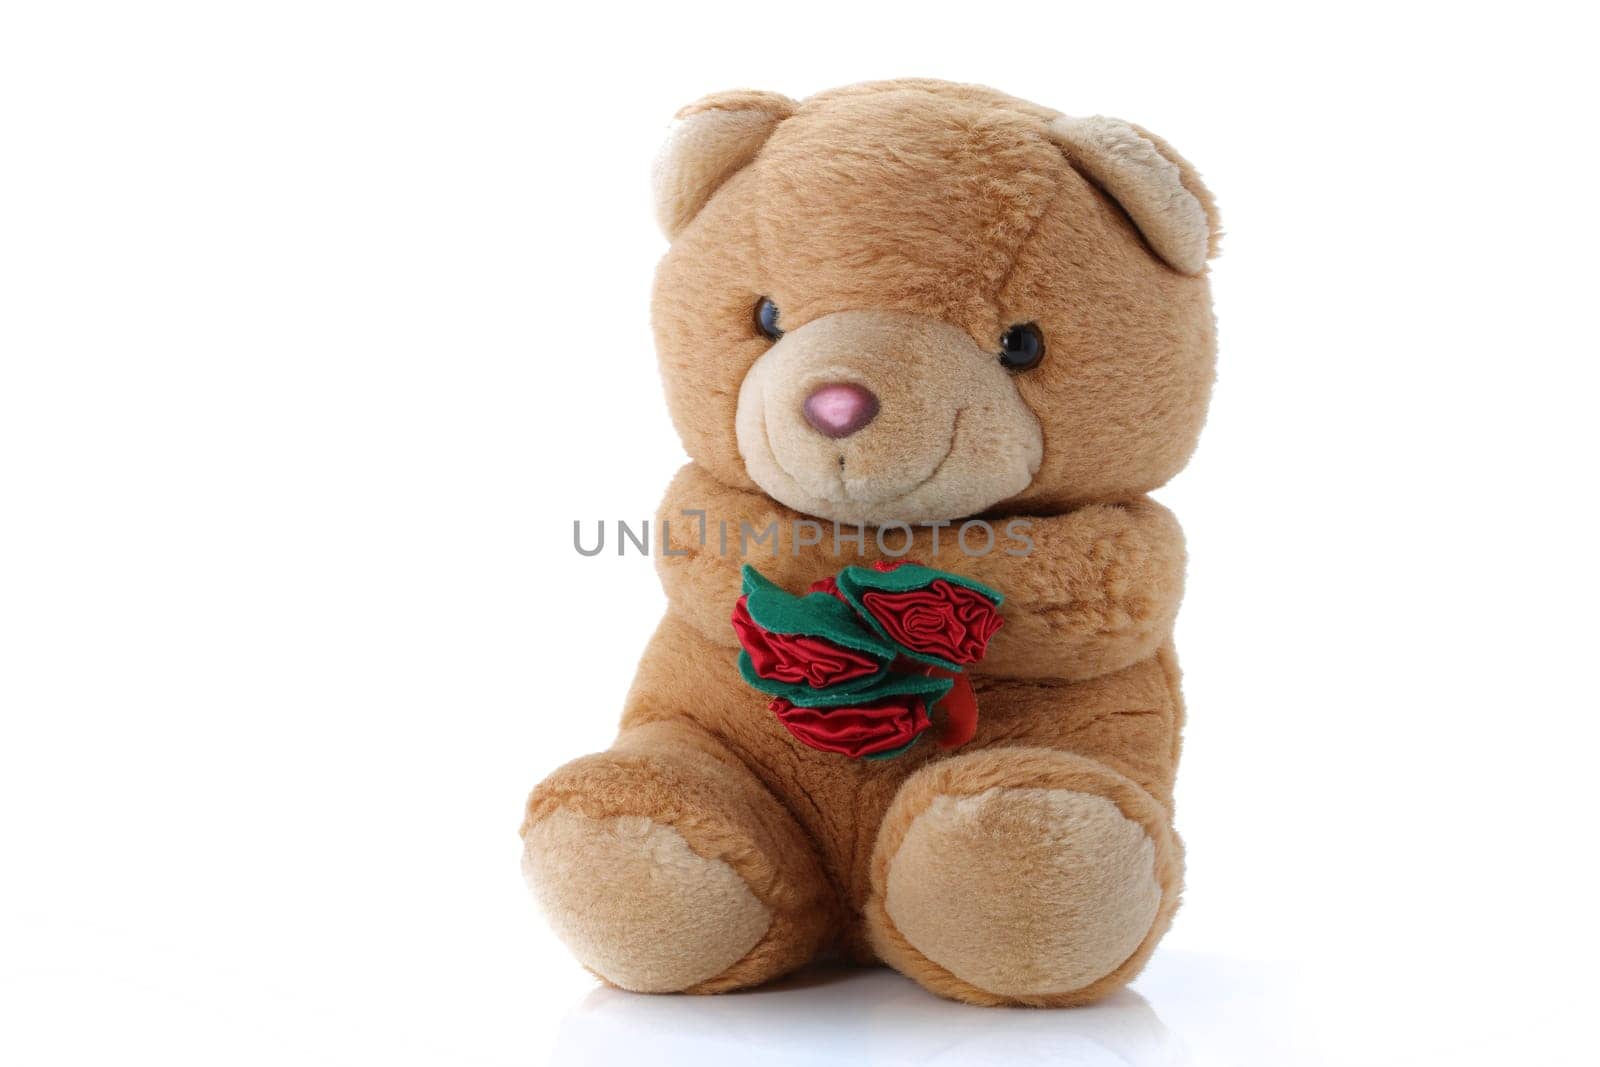 A cute Teddy Bear with roses